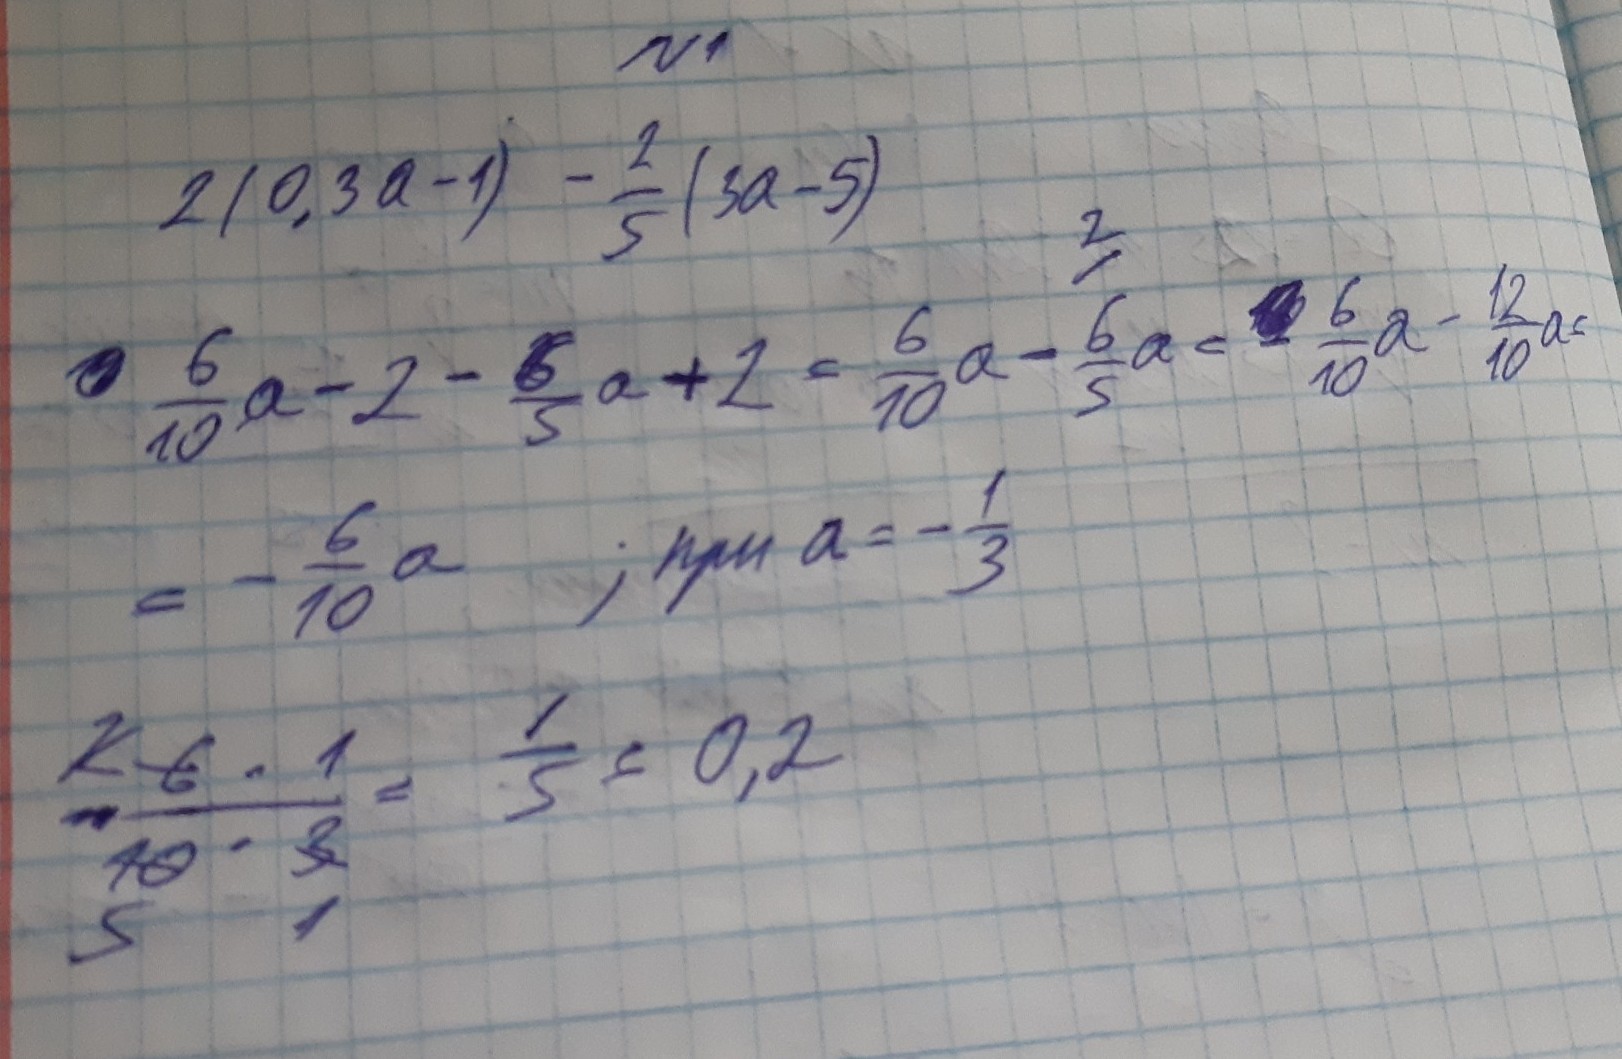 16а 2 0. Что такое 5 1 3 1. (3a-2)2-(a+1)(a+5). 2с1 и 2с3. 1/3 И 2/3.